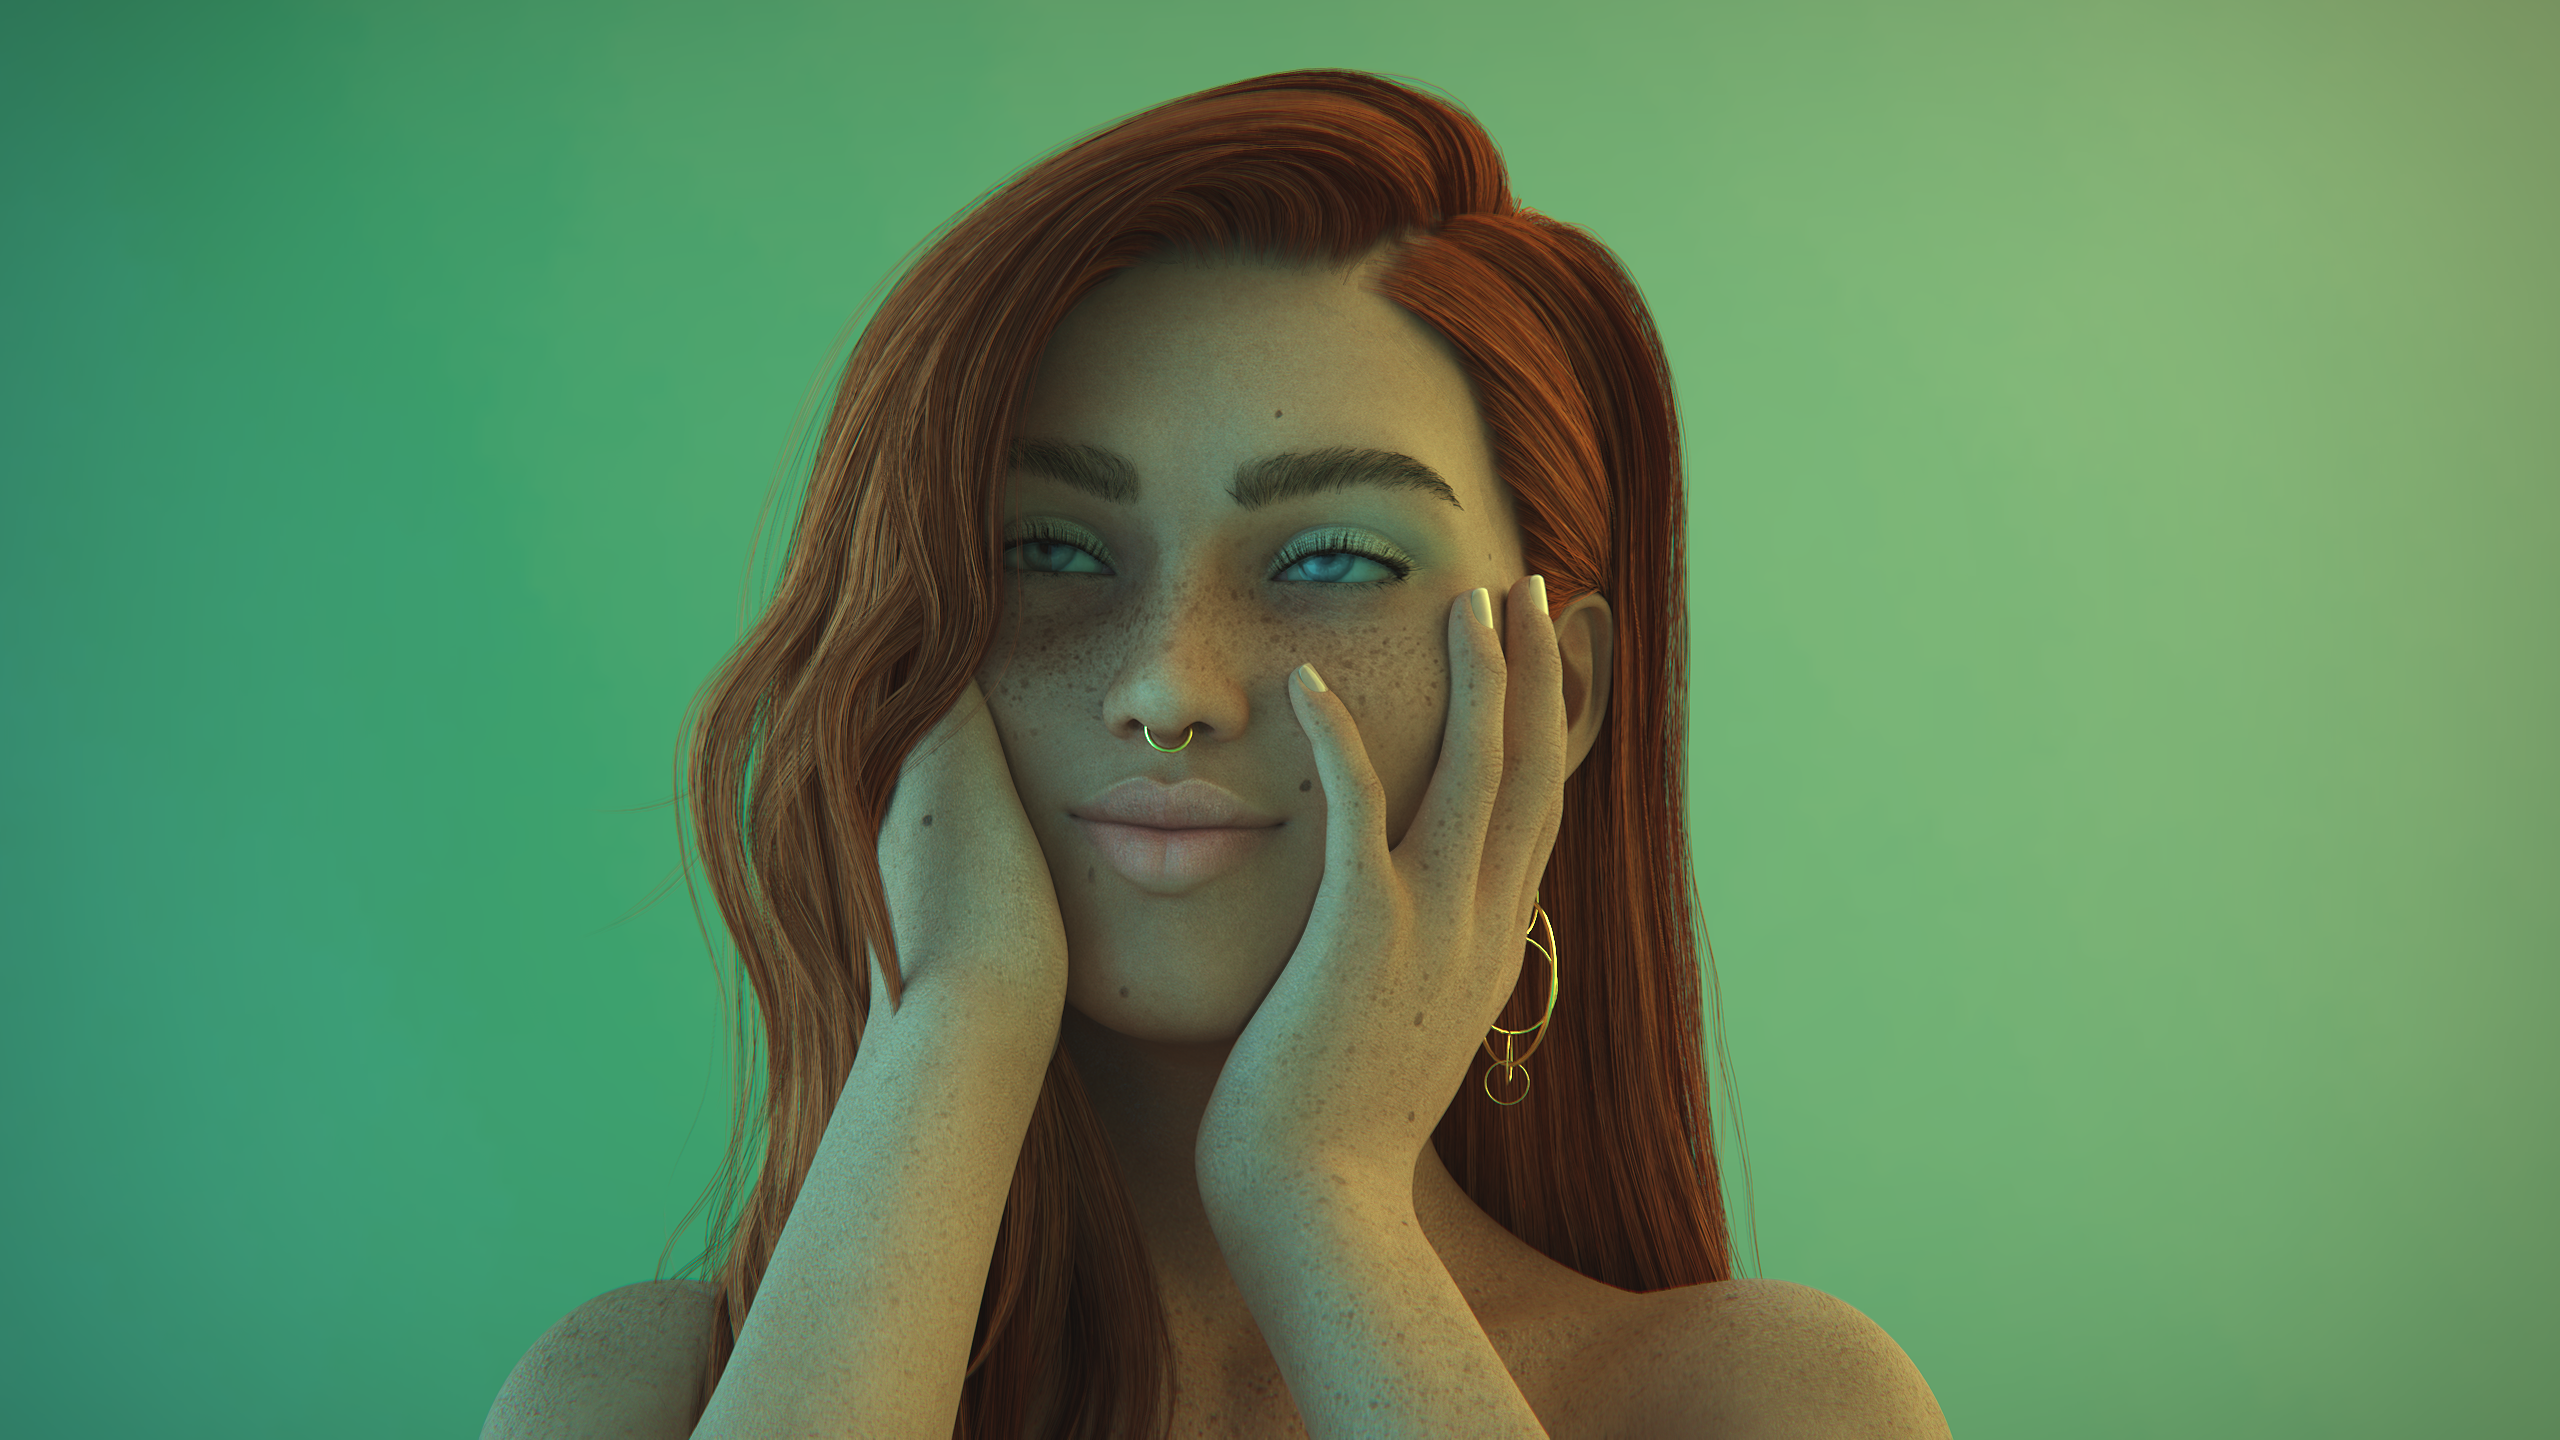 General 2560x1440 women redhead green background blue eyes CGI digital art portrait